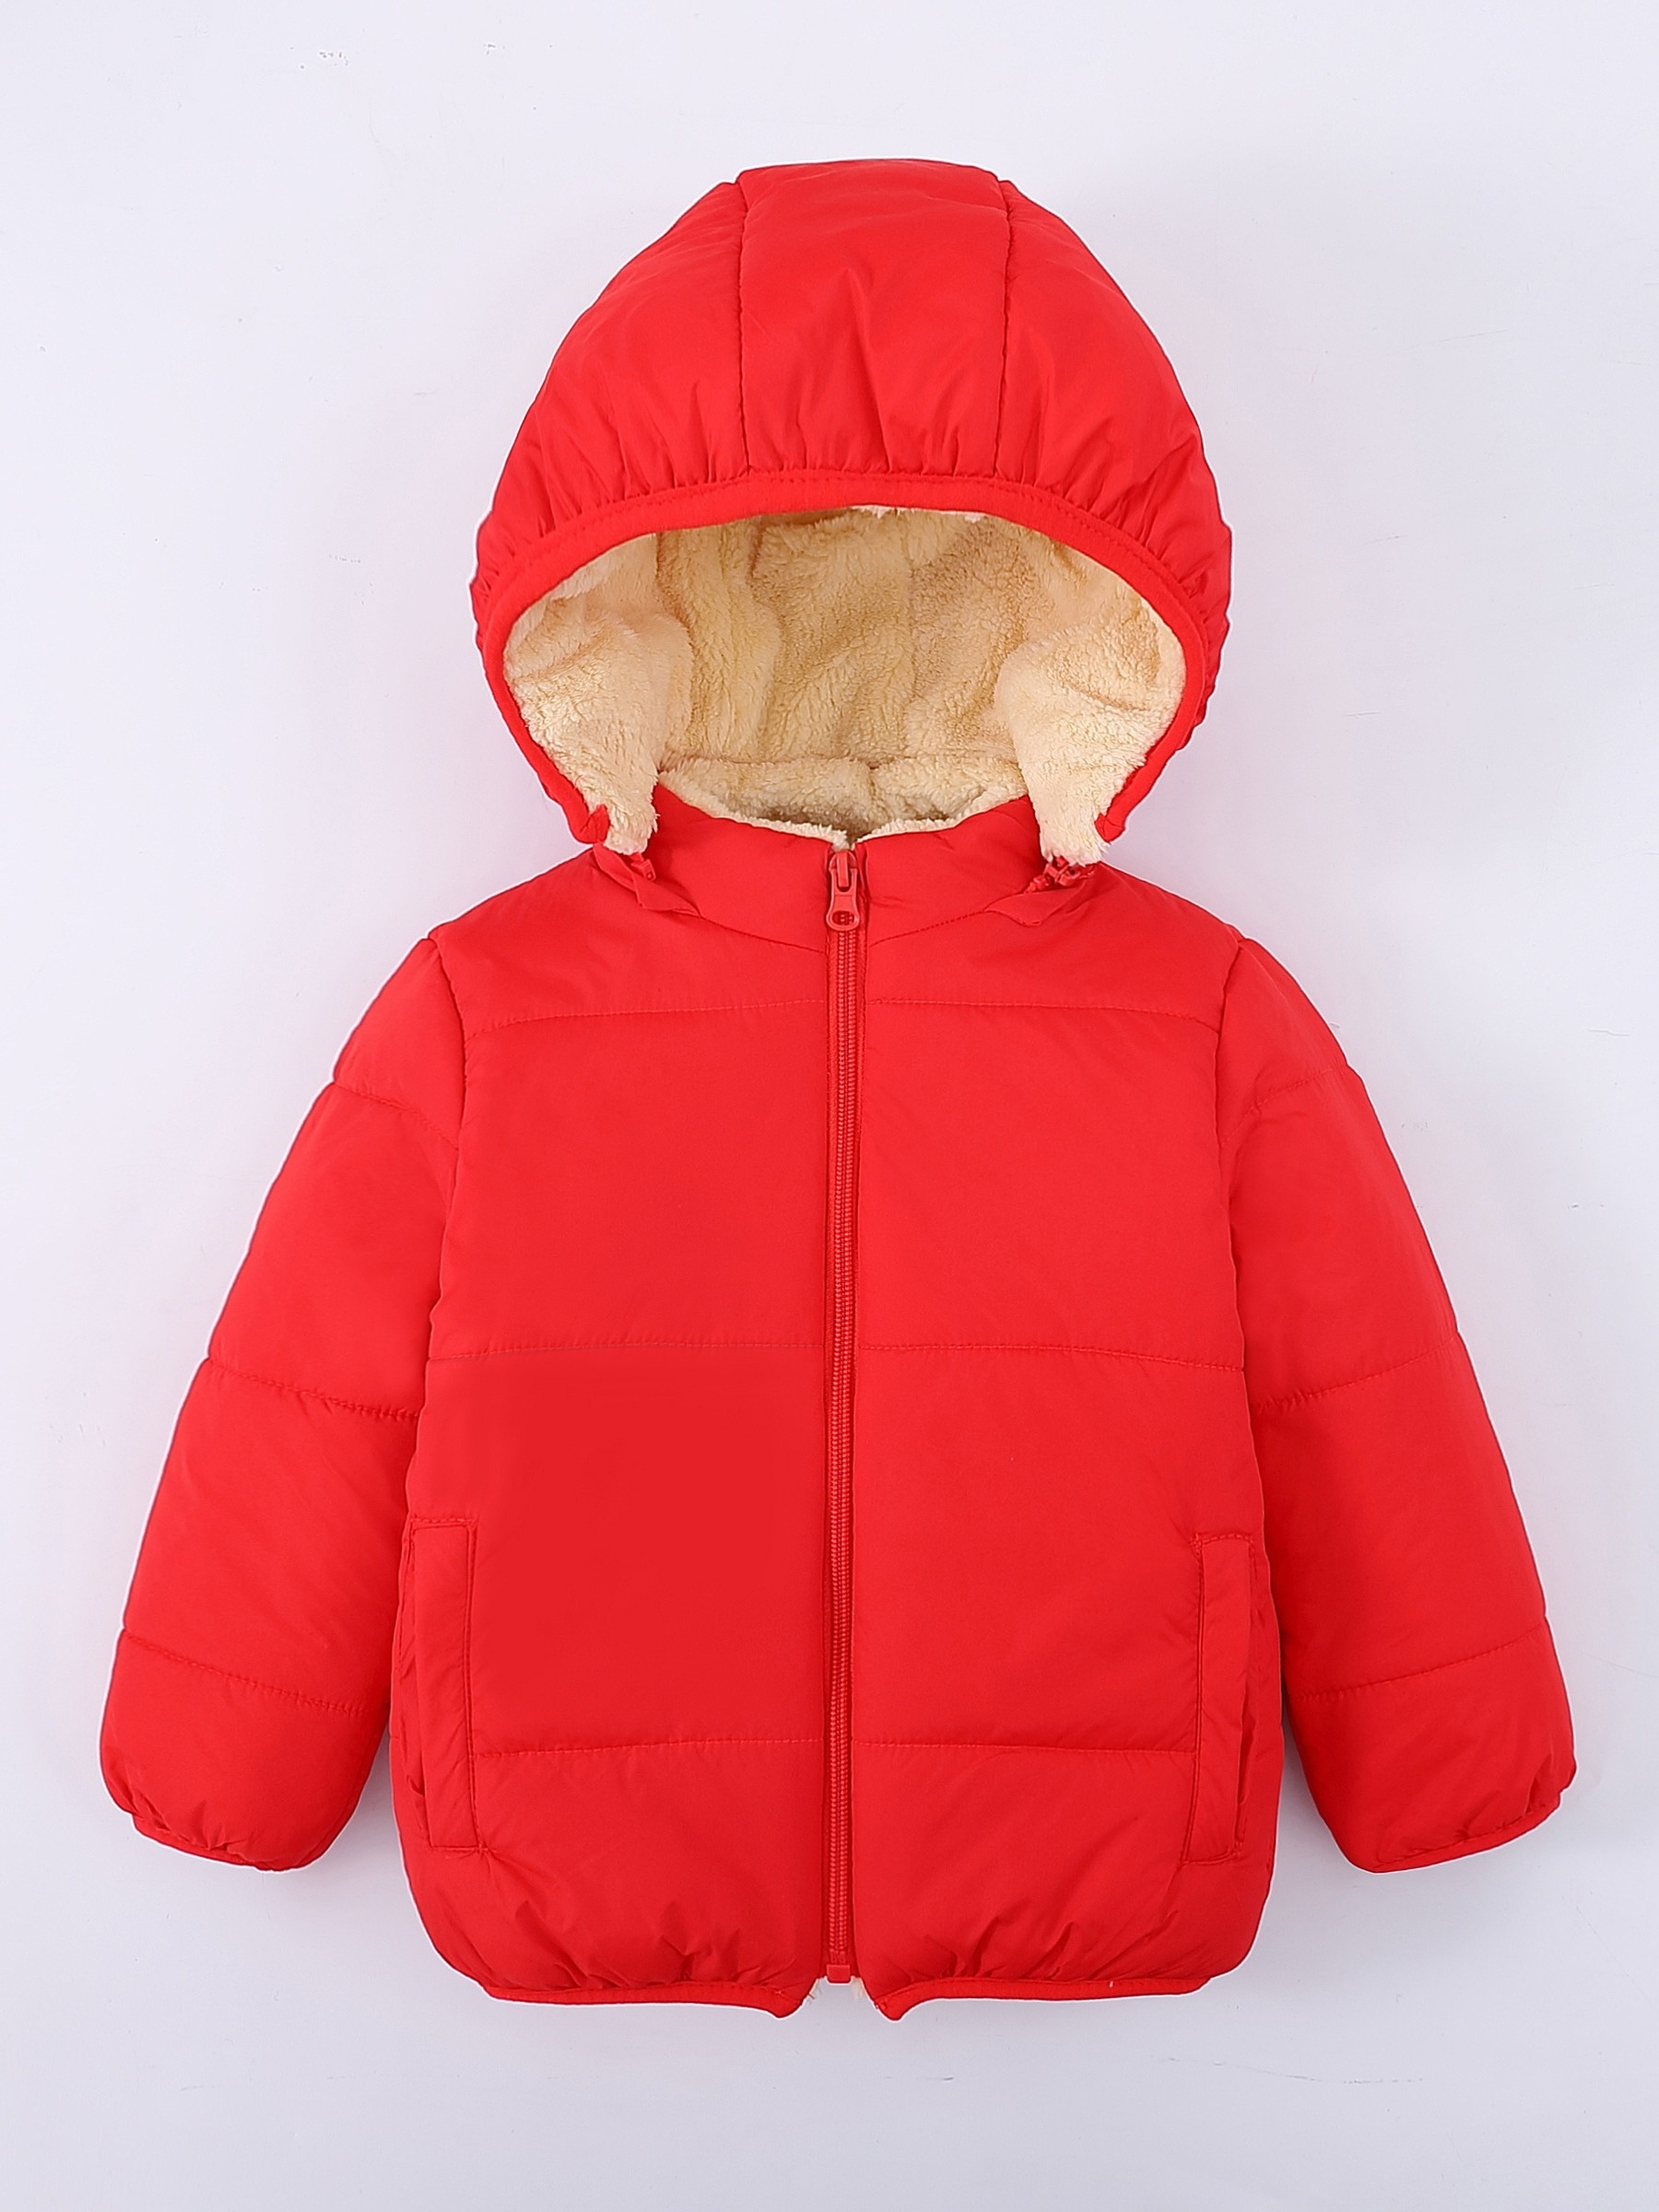  Traje de nieve para niña pequeña, 2 piezas, chaqueta de plumón  para invierno, abrigo con capucha + pantalones de nieve para niños, traje  de esquí resistente al viento, Rosa-1 : Ropa